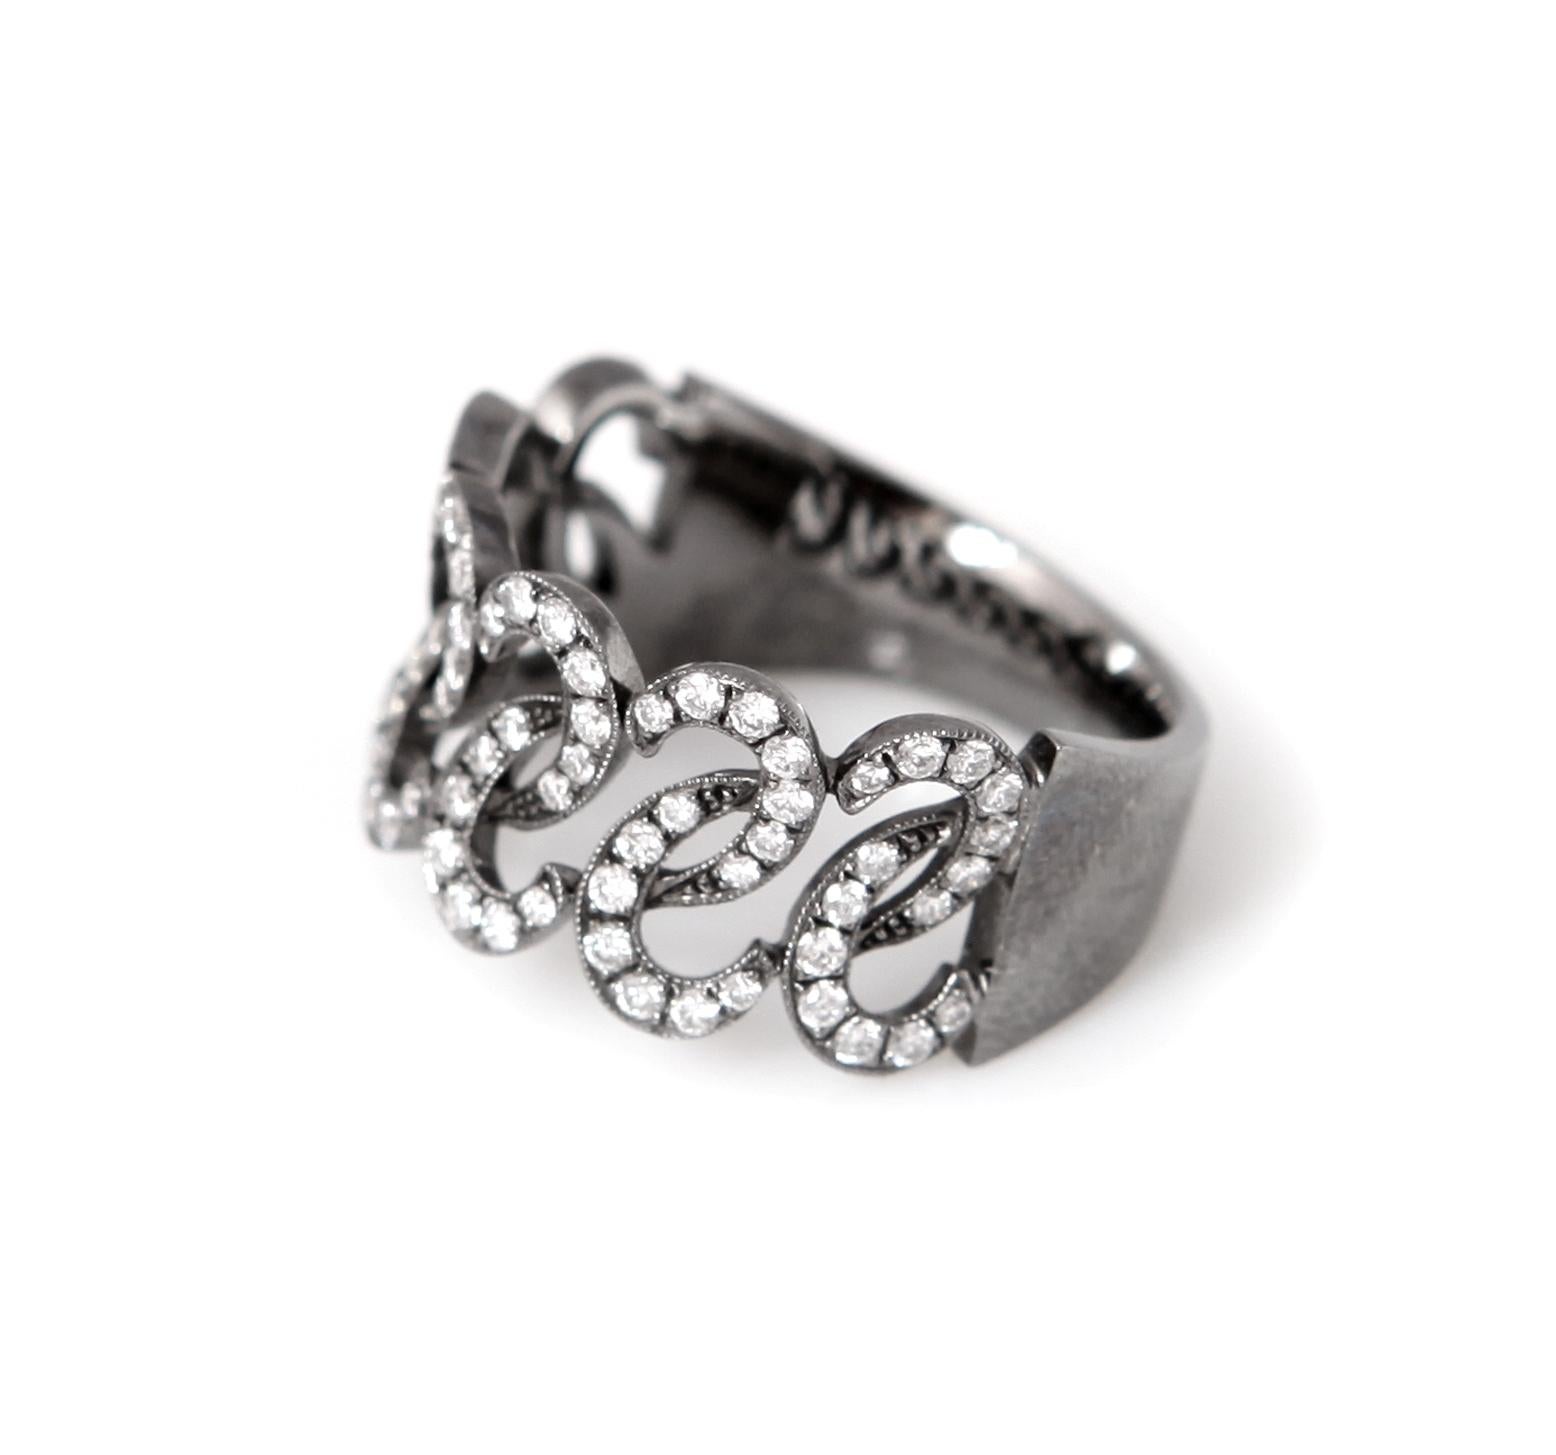 Une bague originale avec deux rangées de bracelets sertis de diamants.

Dimensions de l'anneau : 1 x 2 x 0,2 cm, (0,394 x 0,787 x 0,079 inch)

Poids de la bague : 6 g

Poids des diamants : 0,58 carats

Tour de doigt : 53 (taille US : 6 1/2)

Or noir